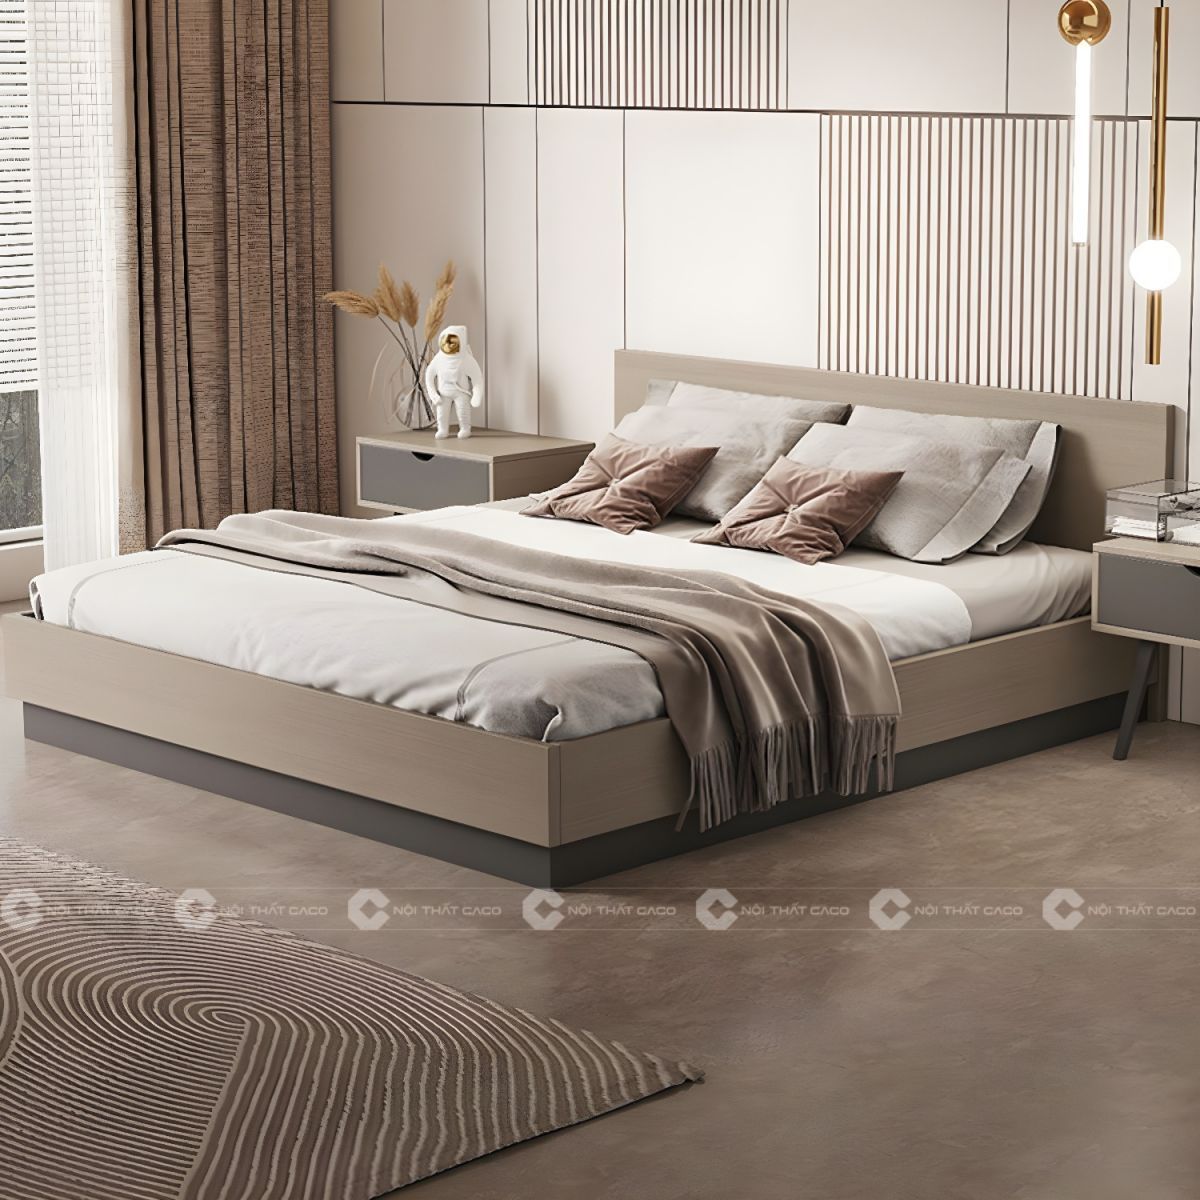 Giường ngủ gỗ công nghiệp với thiết kế thanh lịch